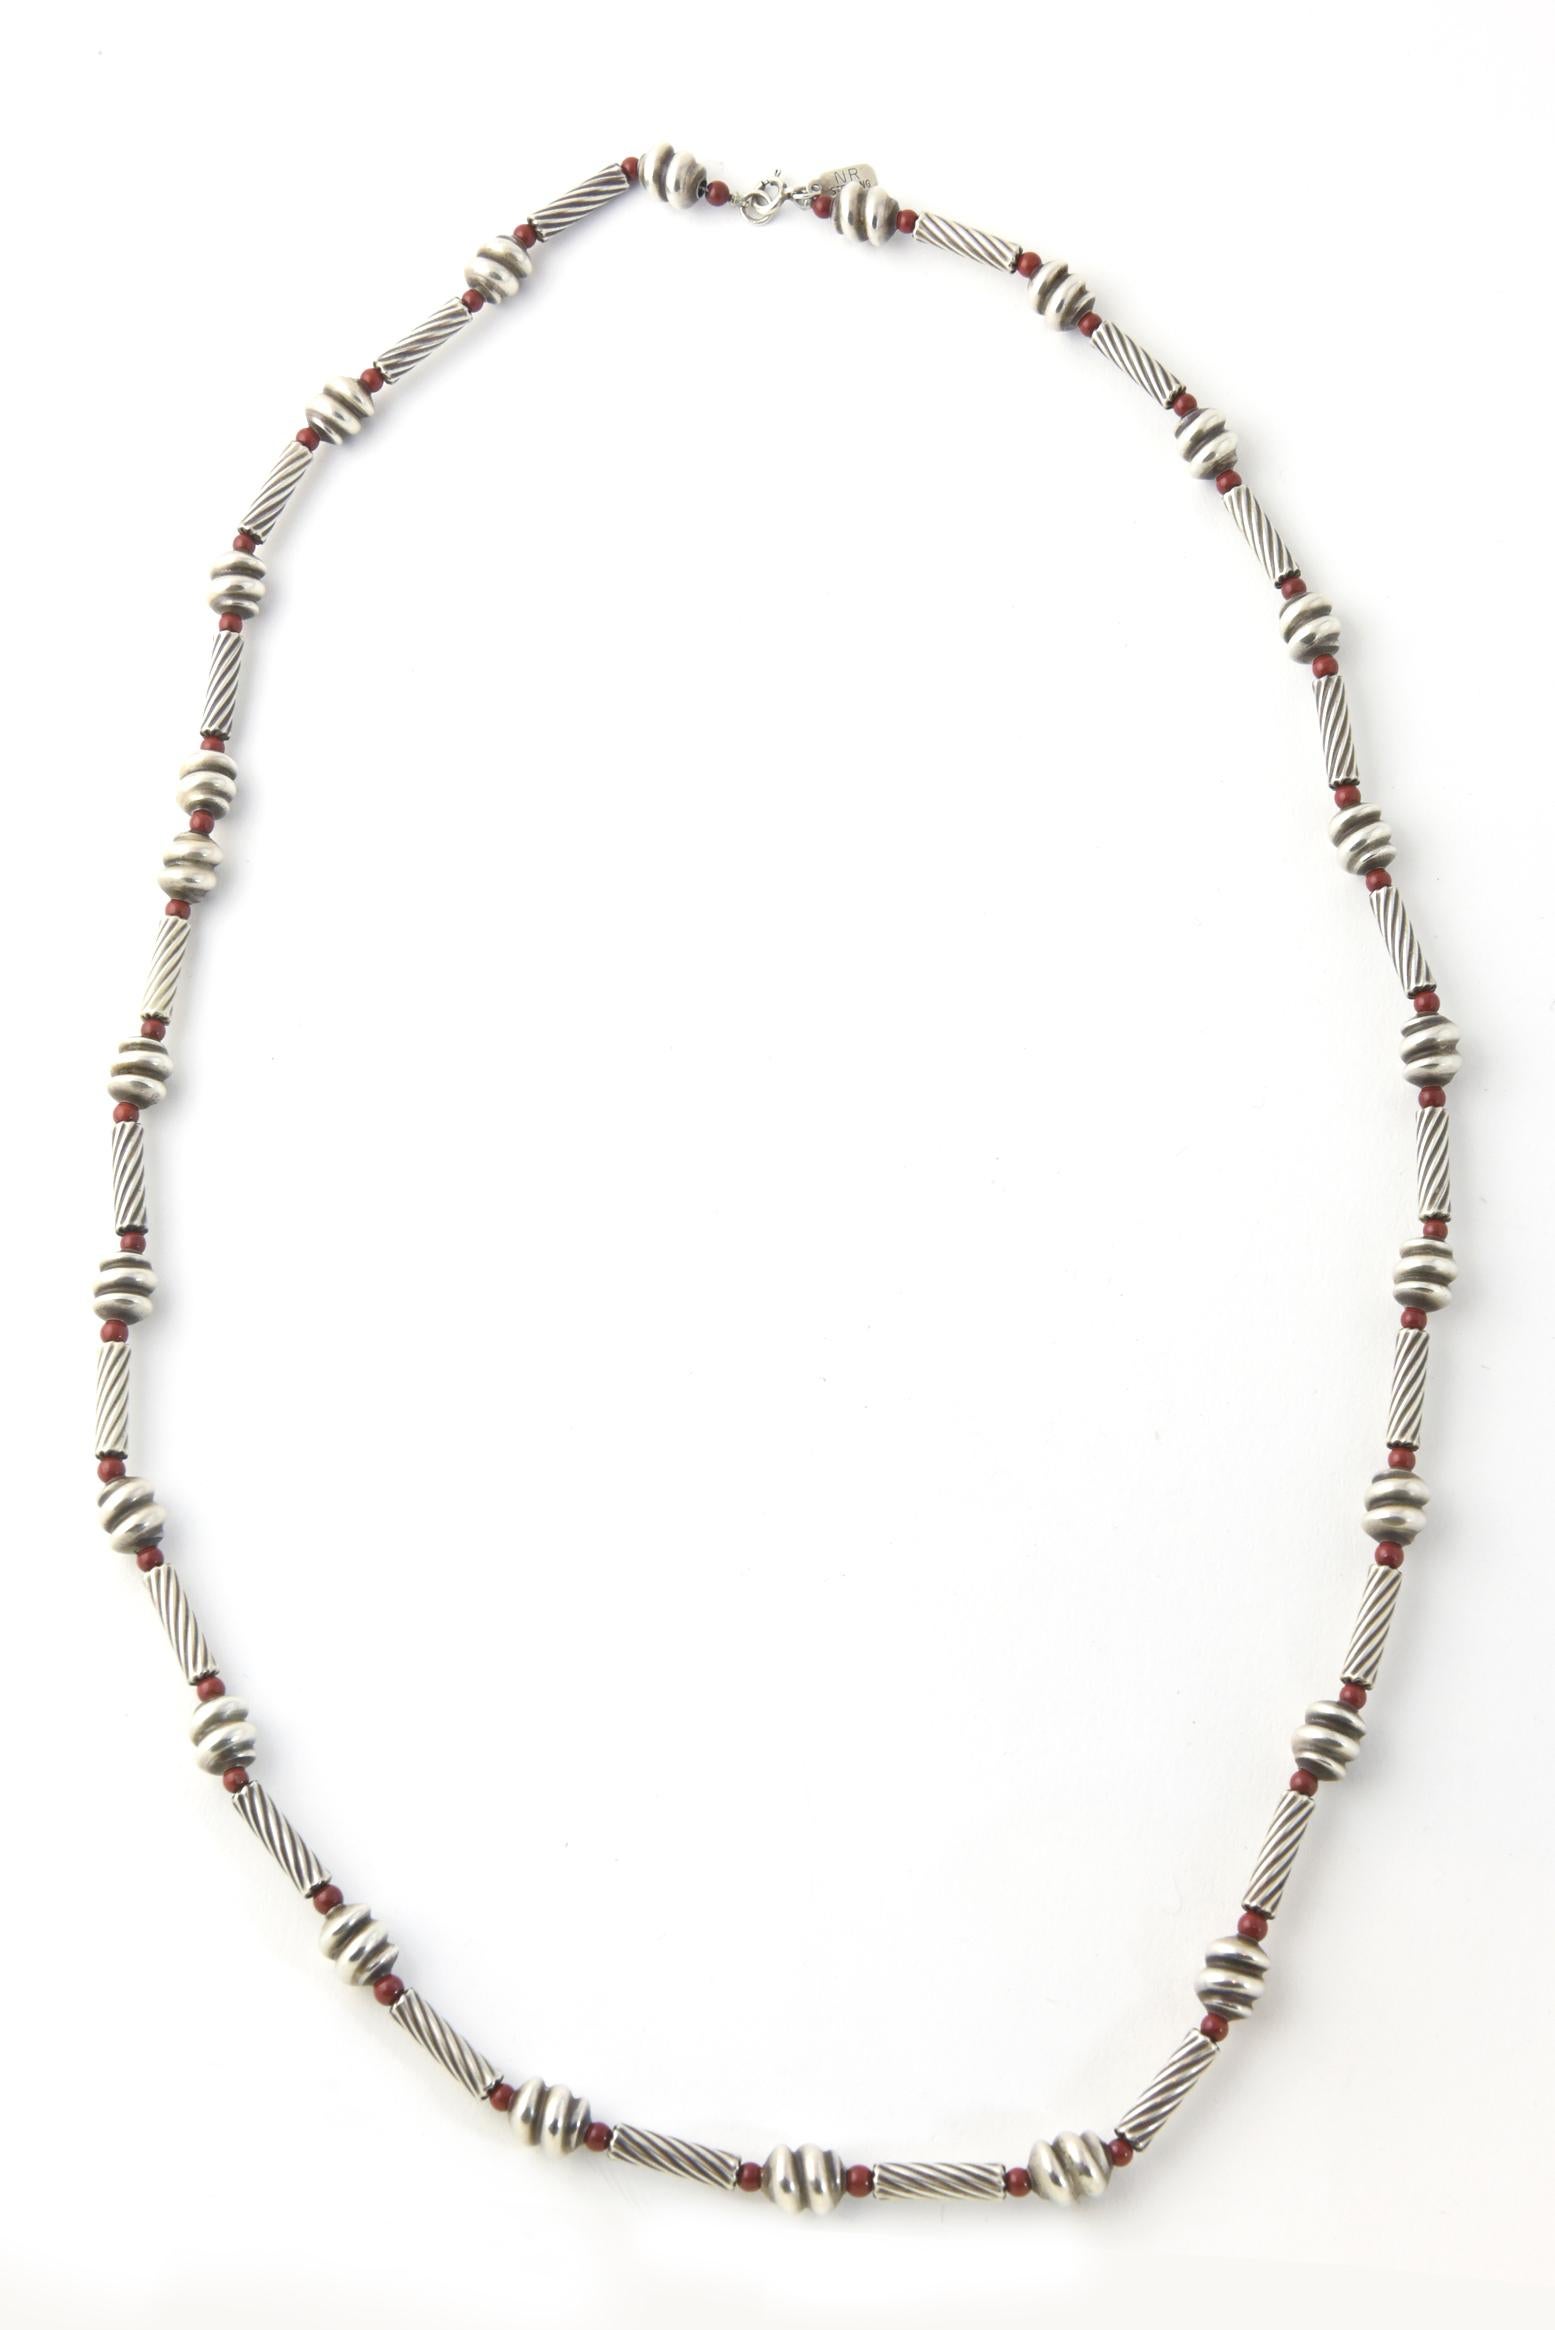 Vintage Nancy & Rise NY Halskette aus Sterlingsilber und Jaspis mit kleinen Chrysopras-Perlen, gerippten Sterling-Röhrenperlen und stilisierten größeren Sterling-Perlen.  Die Halskette ist 33